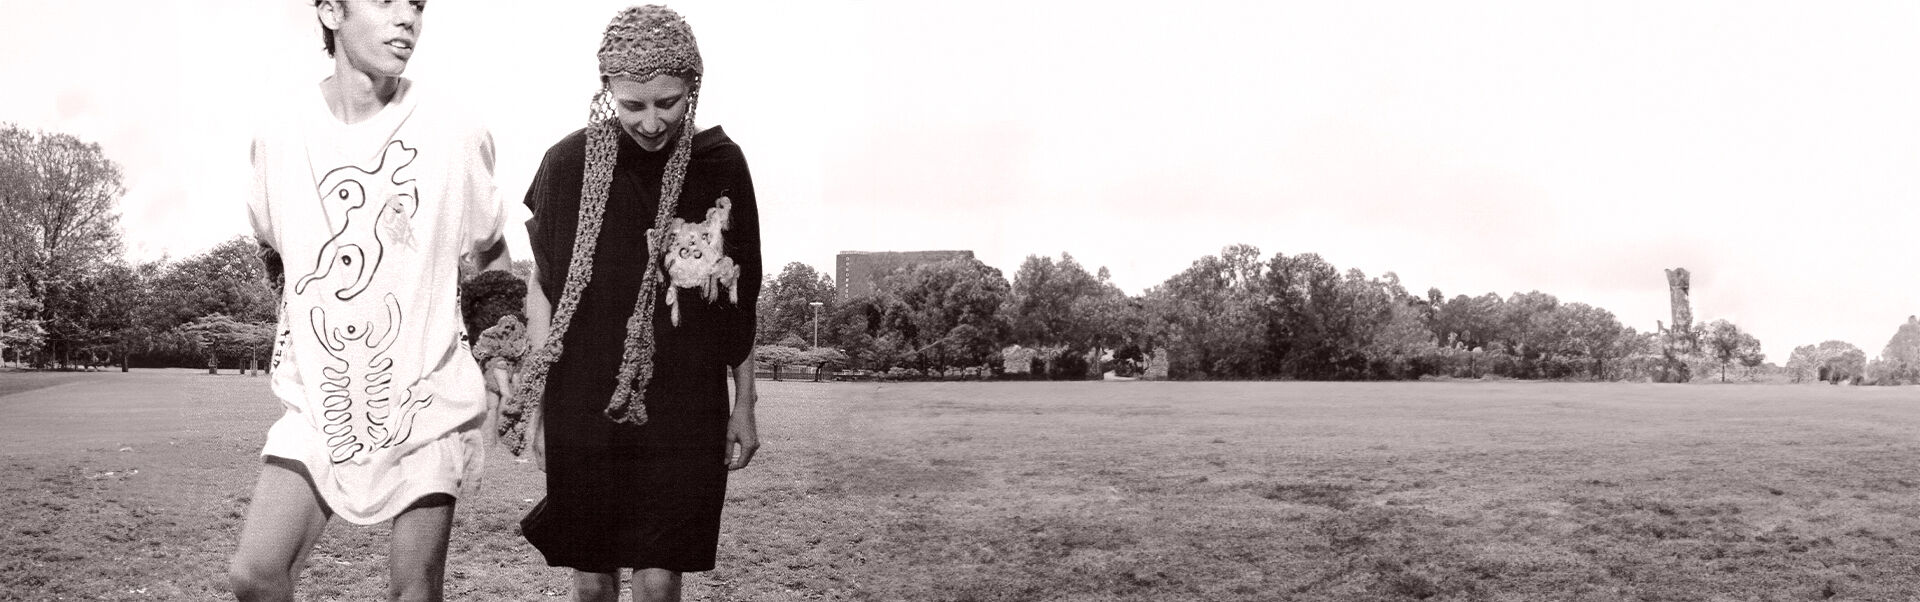 Vivienne Westwood Unveils Archive Looks & Capsule Collection - Numéro  Netherlands